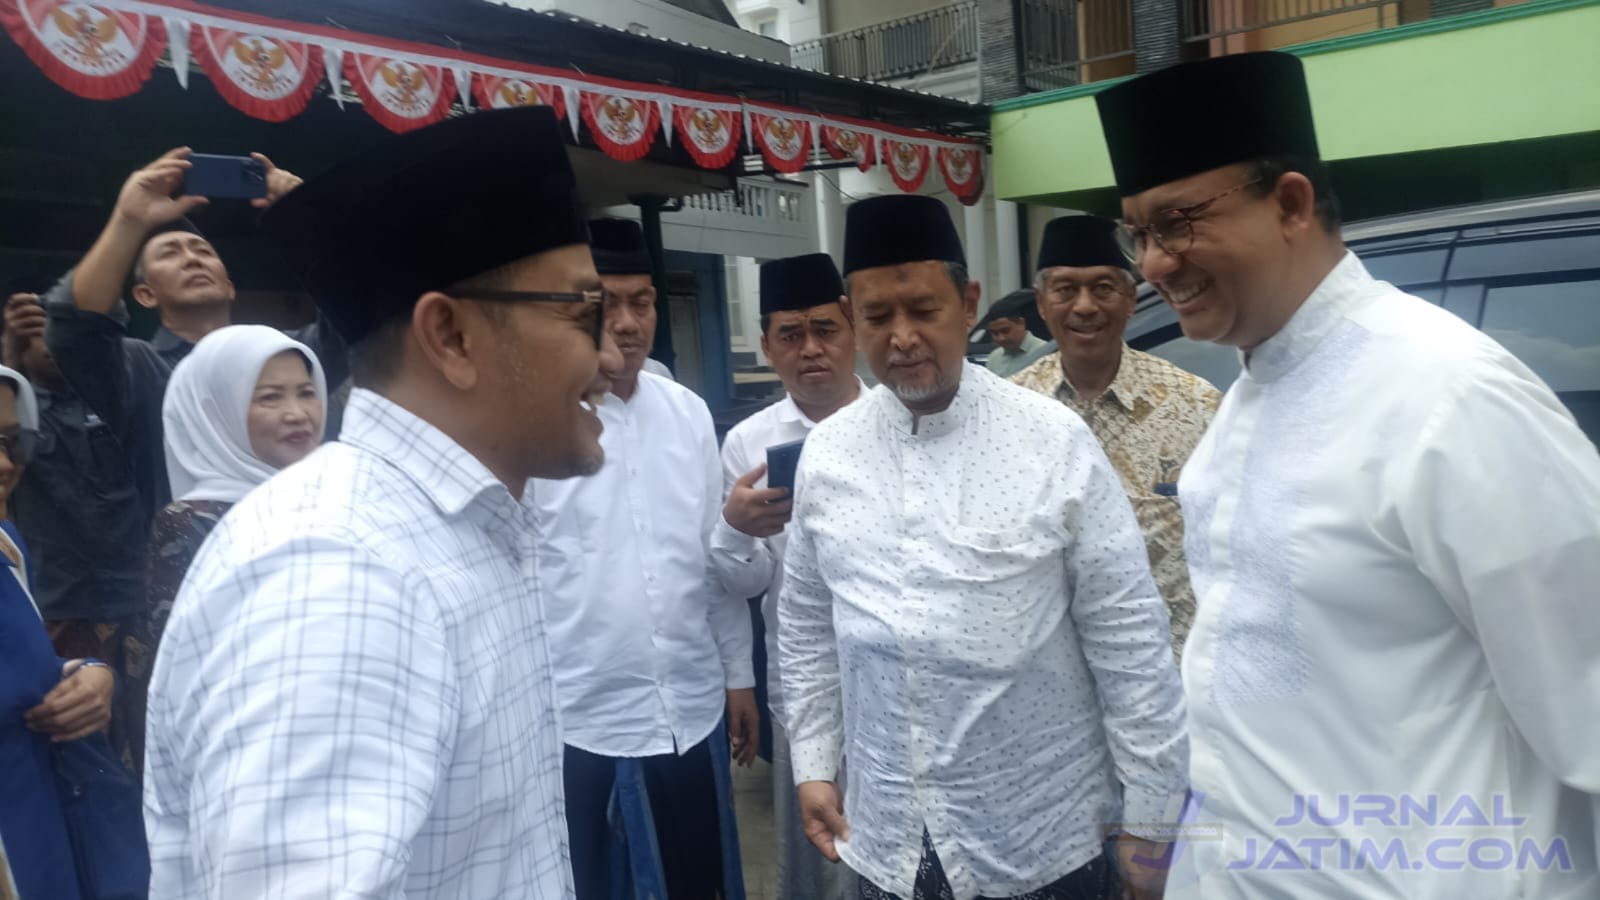 Usai Ziarah, Anies Baswedan Minta Doa Restu Ibunda Muhaimin Iskandar di Jombang